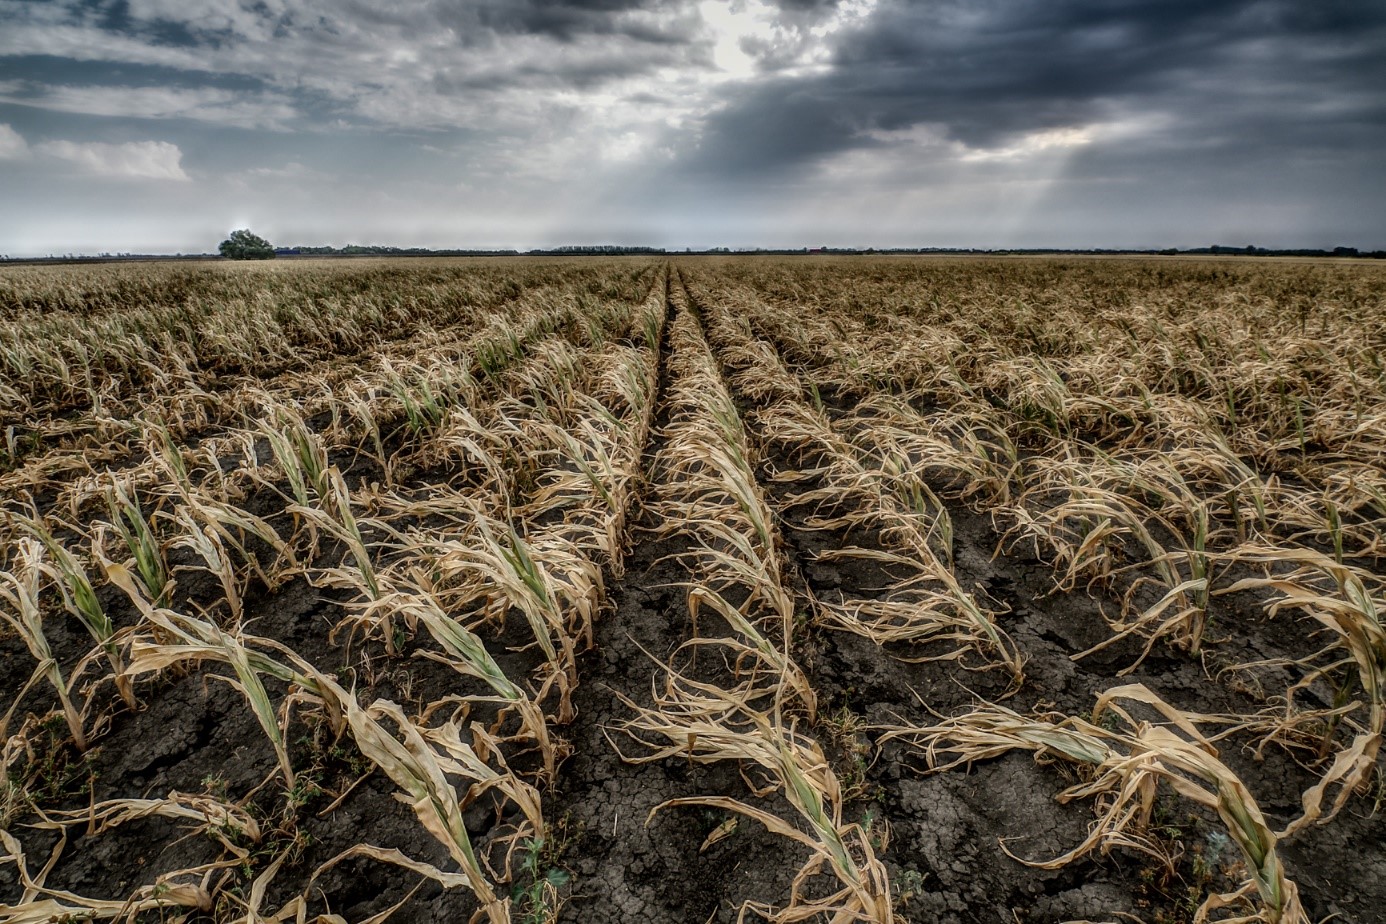 2022 nyarán a felhősödés és a légkör közepes/magas nedvességtartalma ellenére nem esett csapadék, a talaj kiszáradt, az ősszel betakarítandó növények sok helyen 100%-os terméskiesést mutattak (Fotó: Jakab Gusztáv).